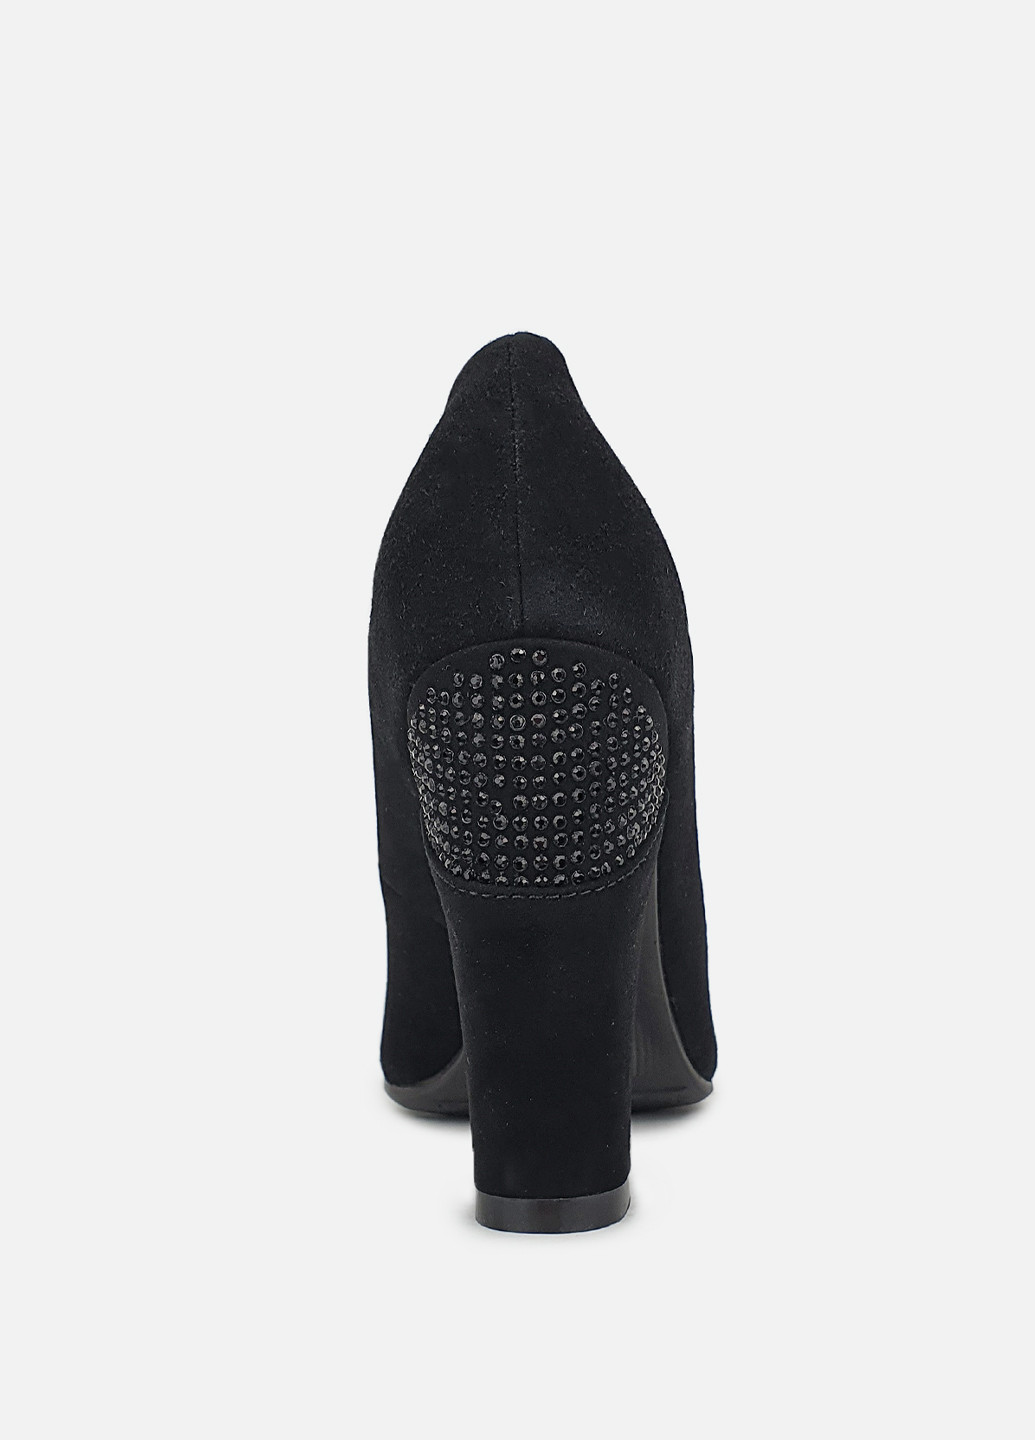 Женские туфли на широком каблуке черные замшевые Maria Moro